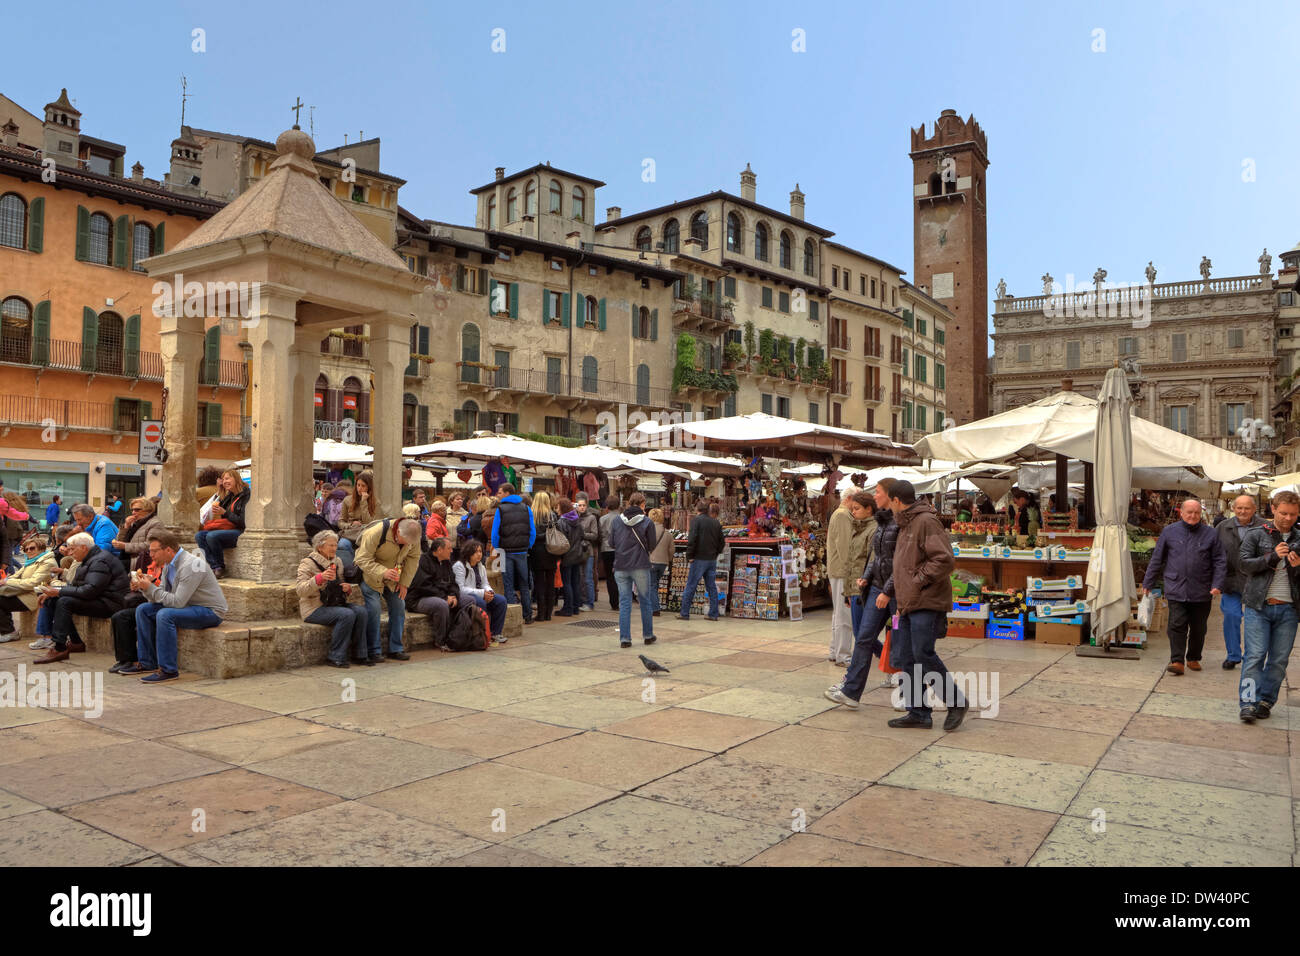 Piazza delle Erbe, Verona Stock Photo